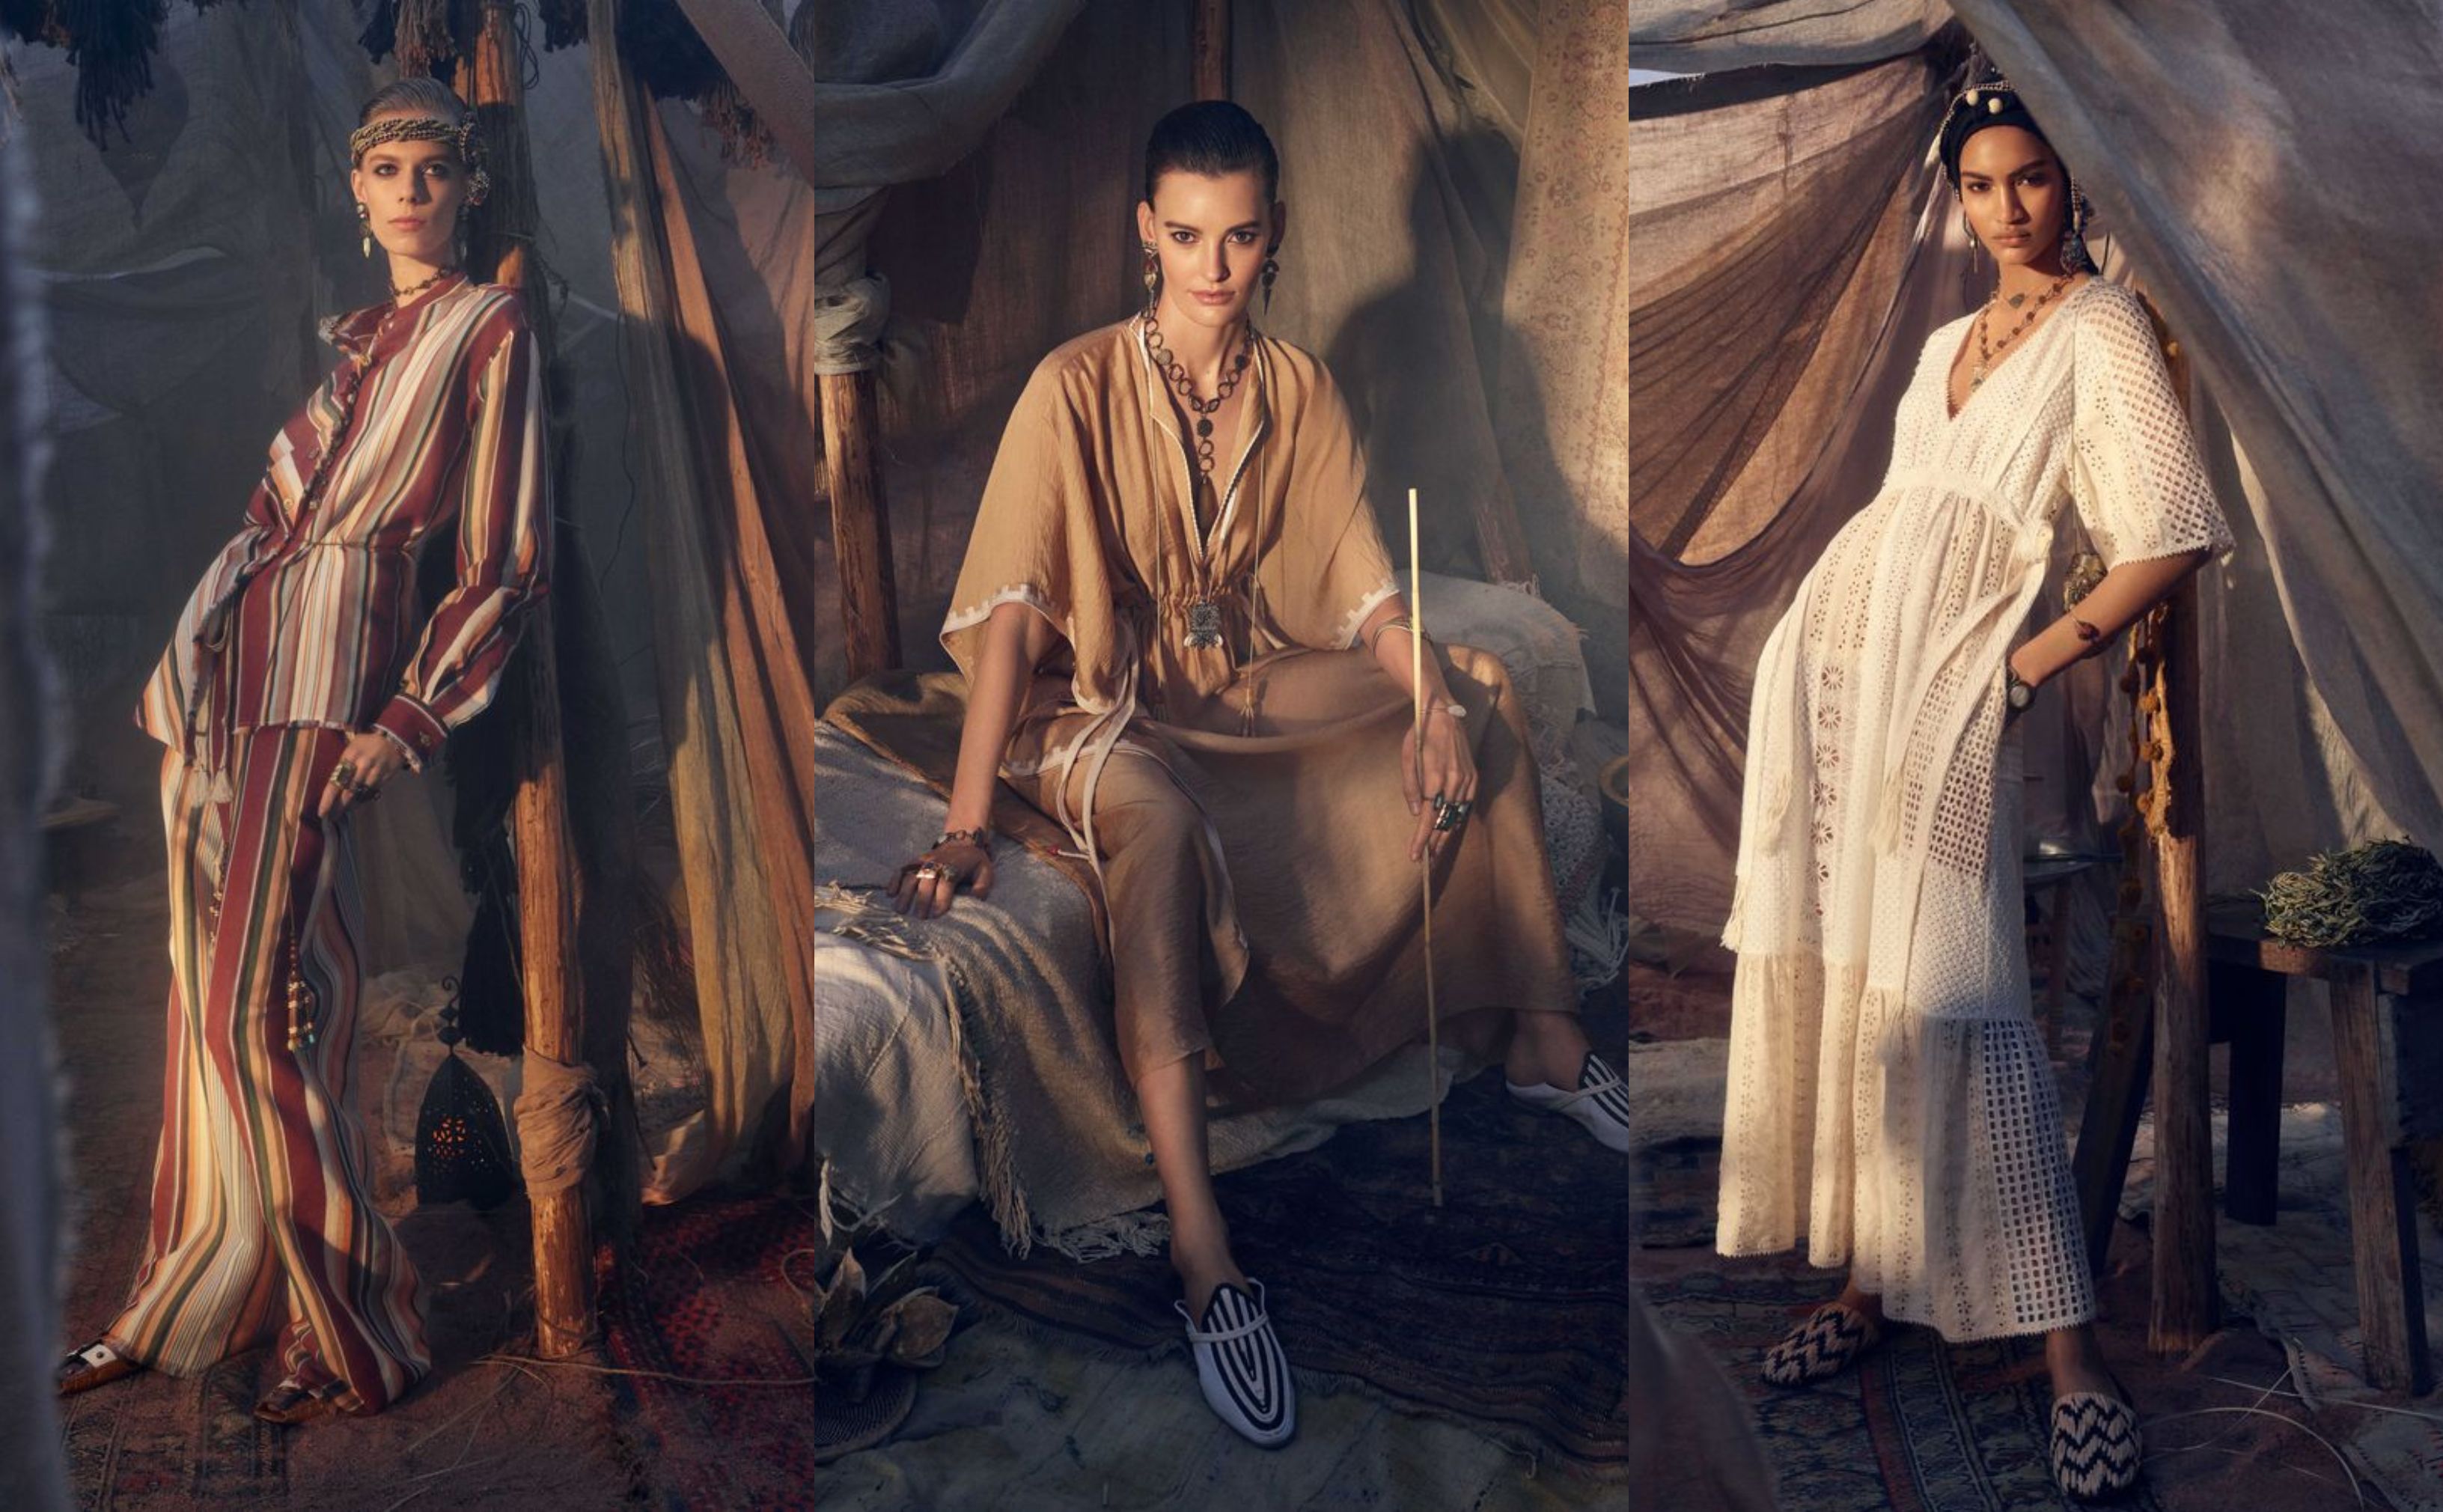 Así las nuevas modelos de en Instagram- Estas son las modelos de nueva campaña de Zara